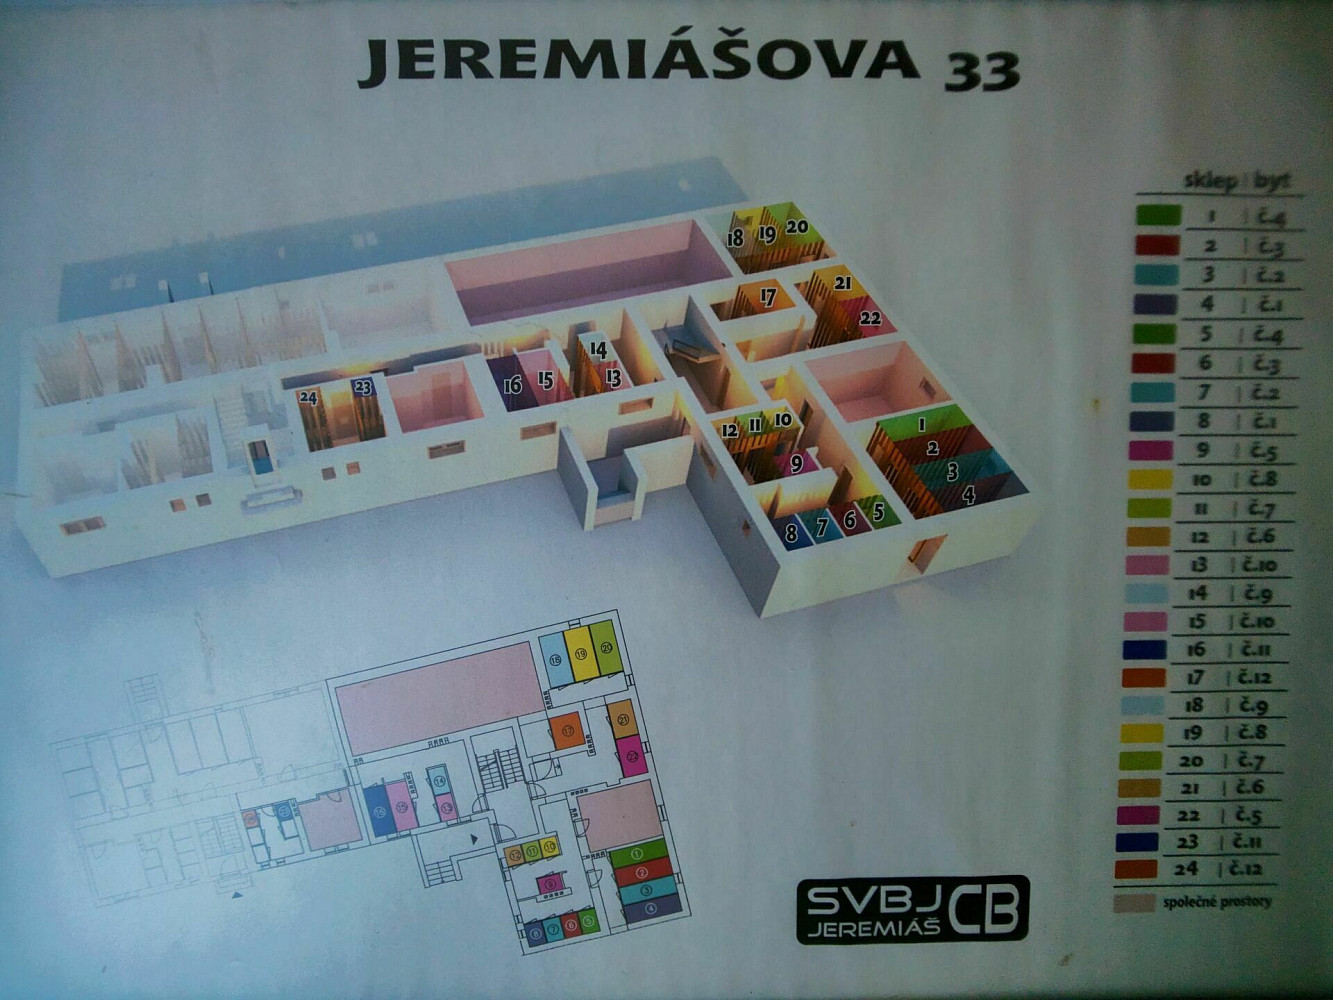 Jeremiášova, České Budějovice - České Budějovice 3